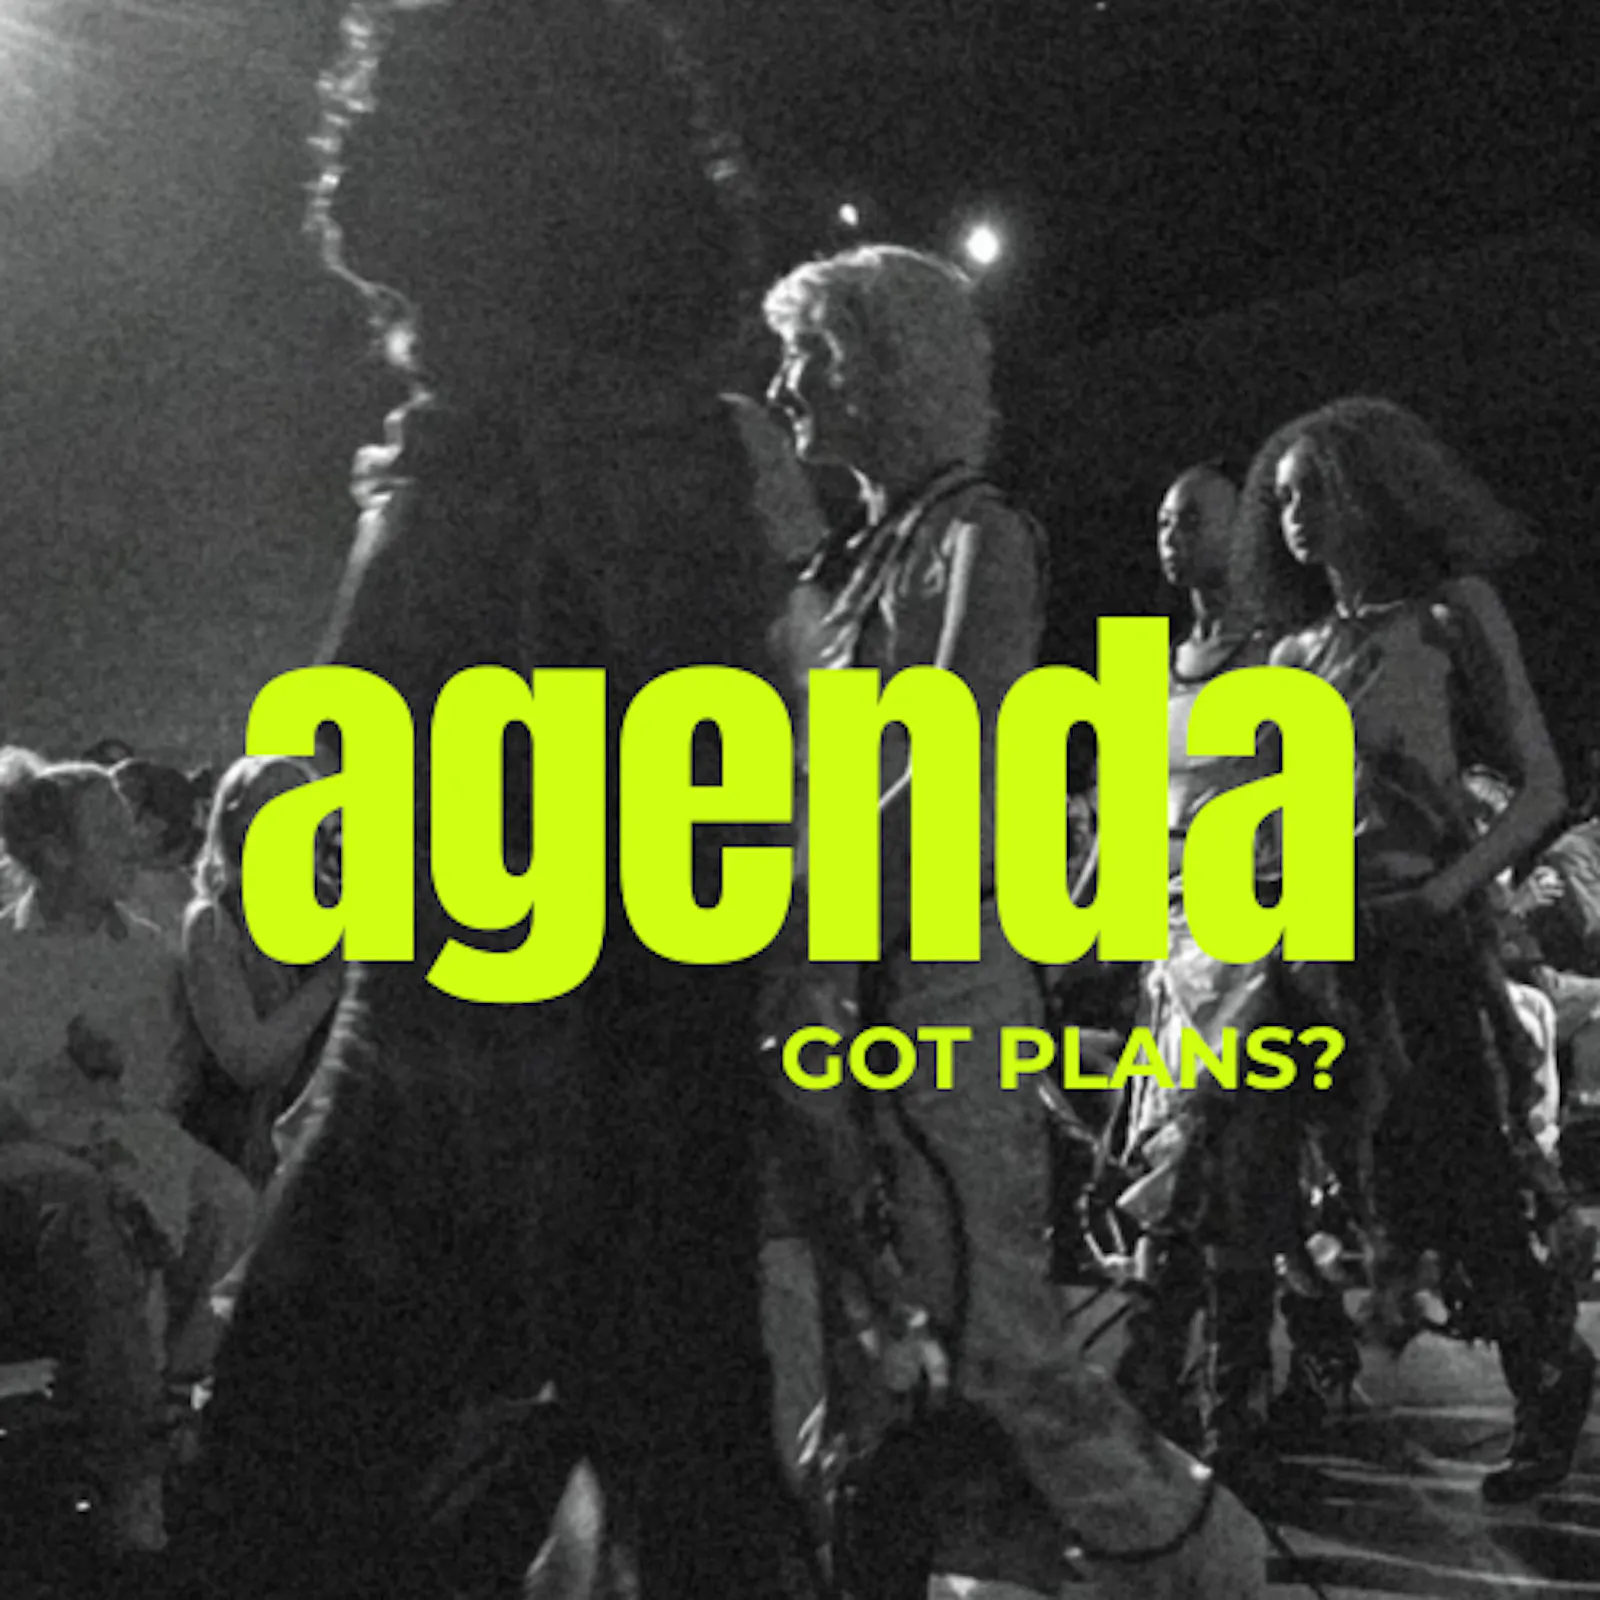 graues Bild einer Modenschau, darauf der Schriftzug "Agenda - got plans?"